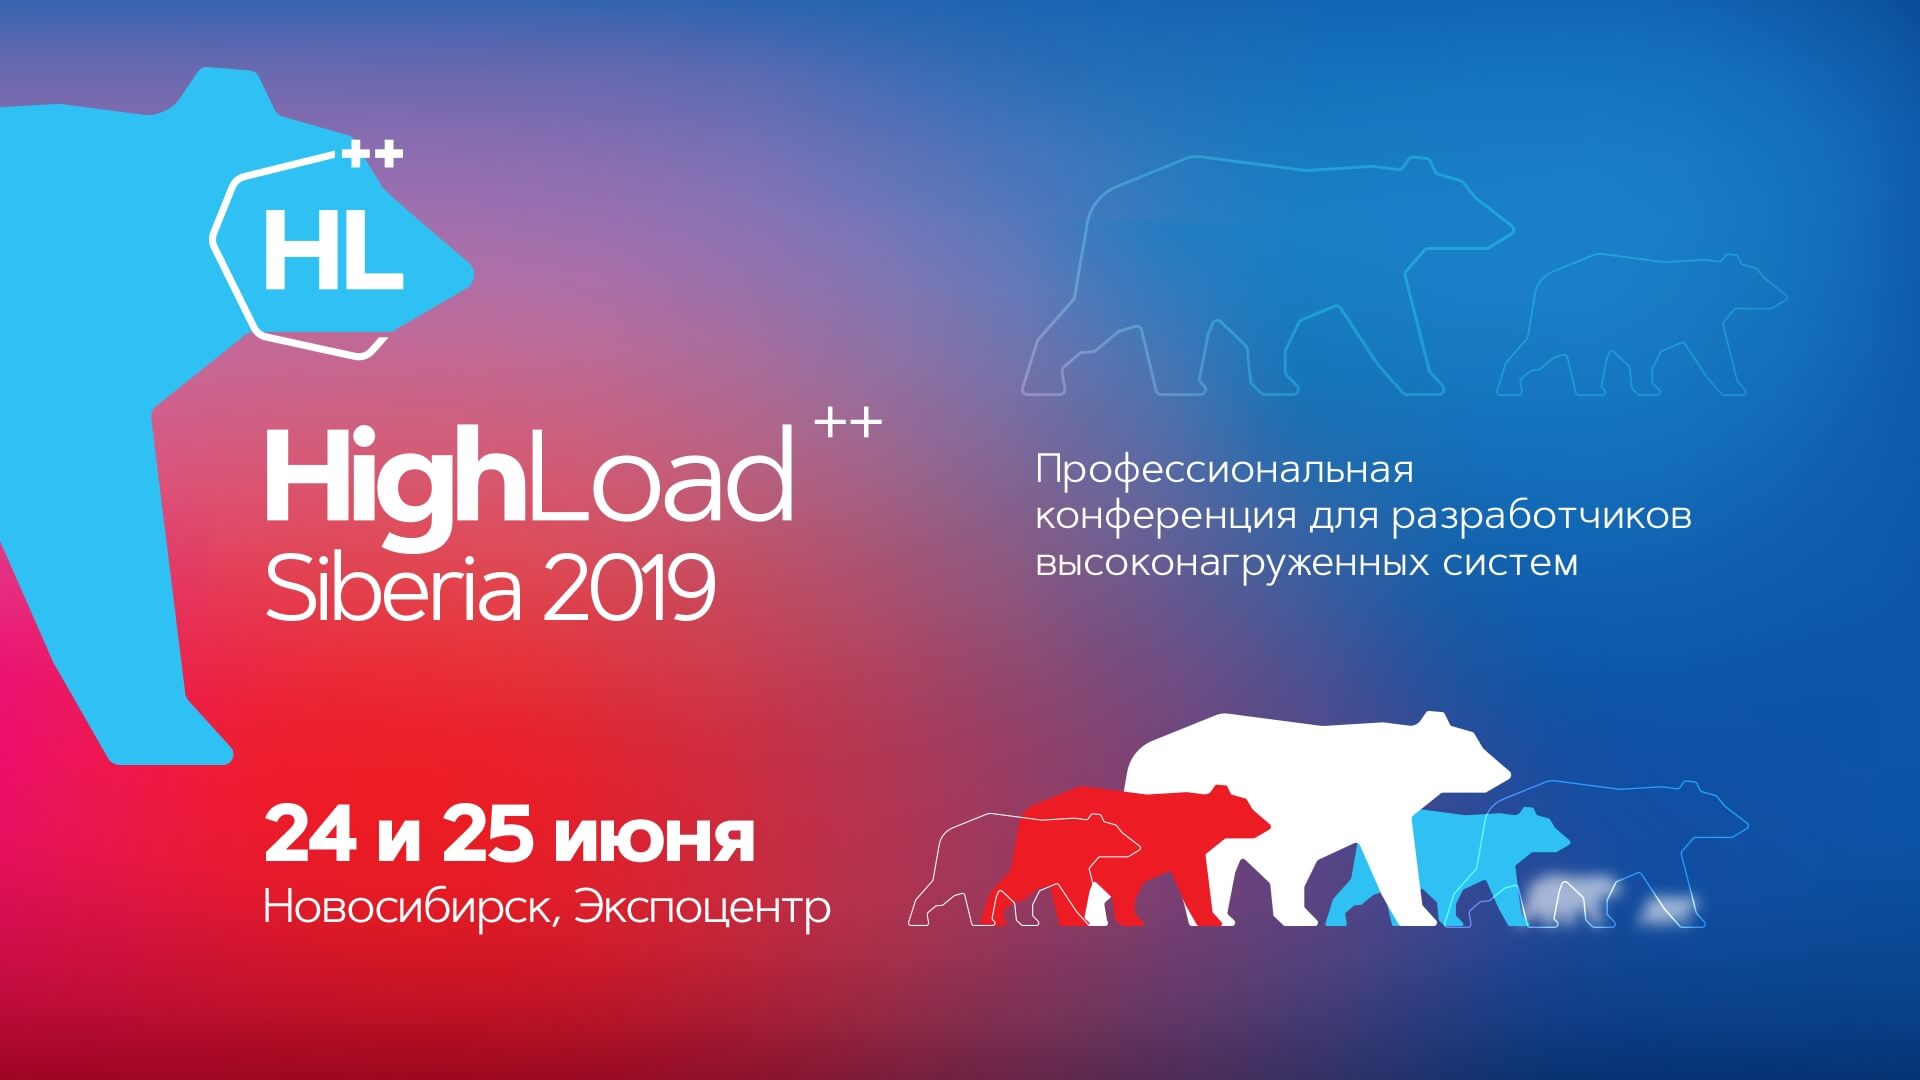 Конференция разработчиков высоконагруженных систем HighLoad++ в Сибири 2019